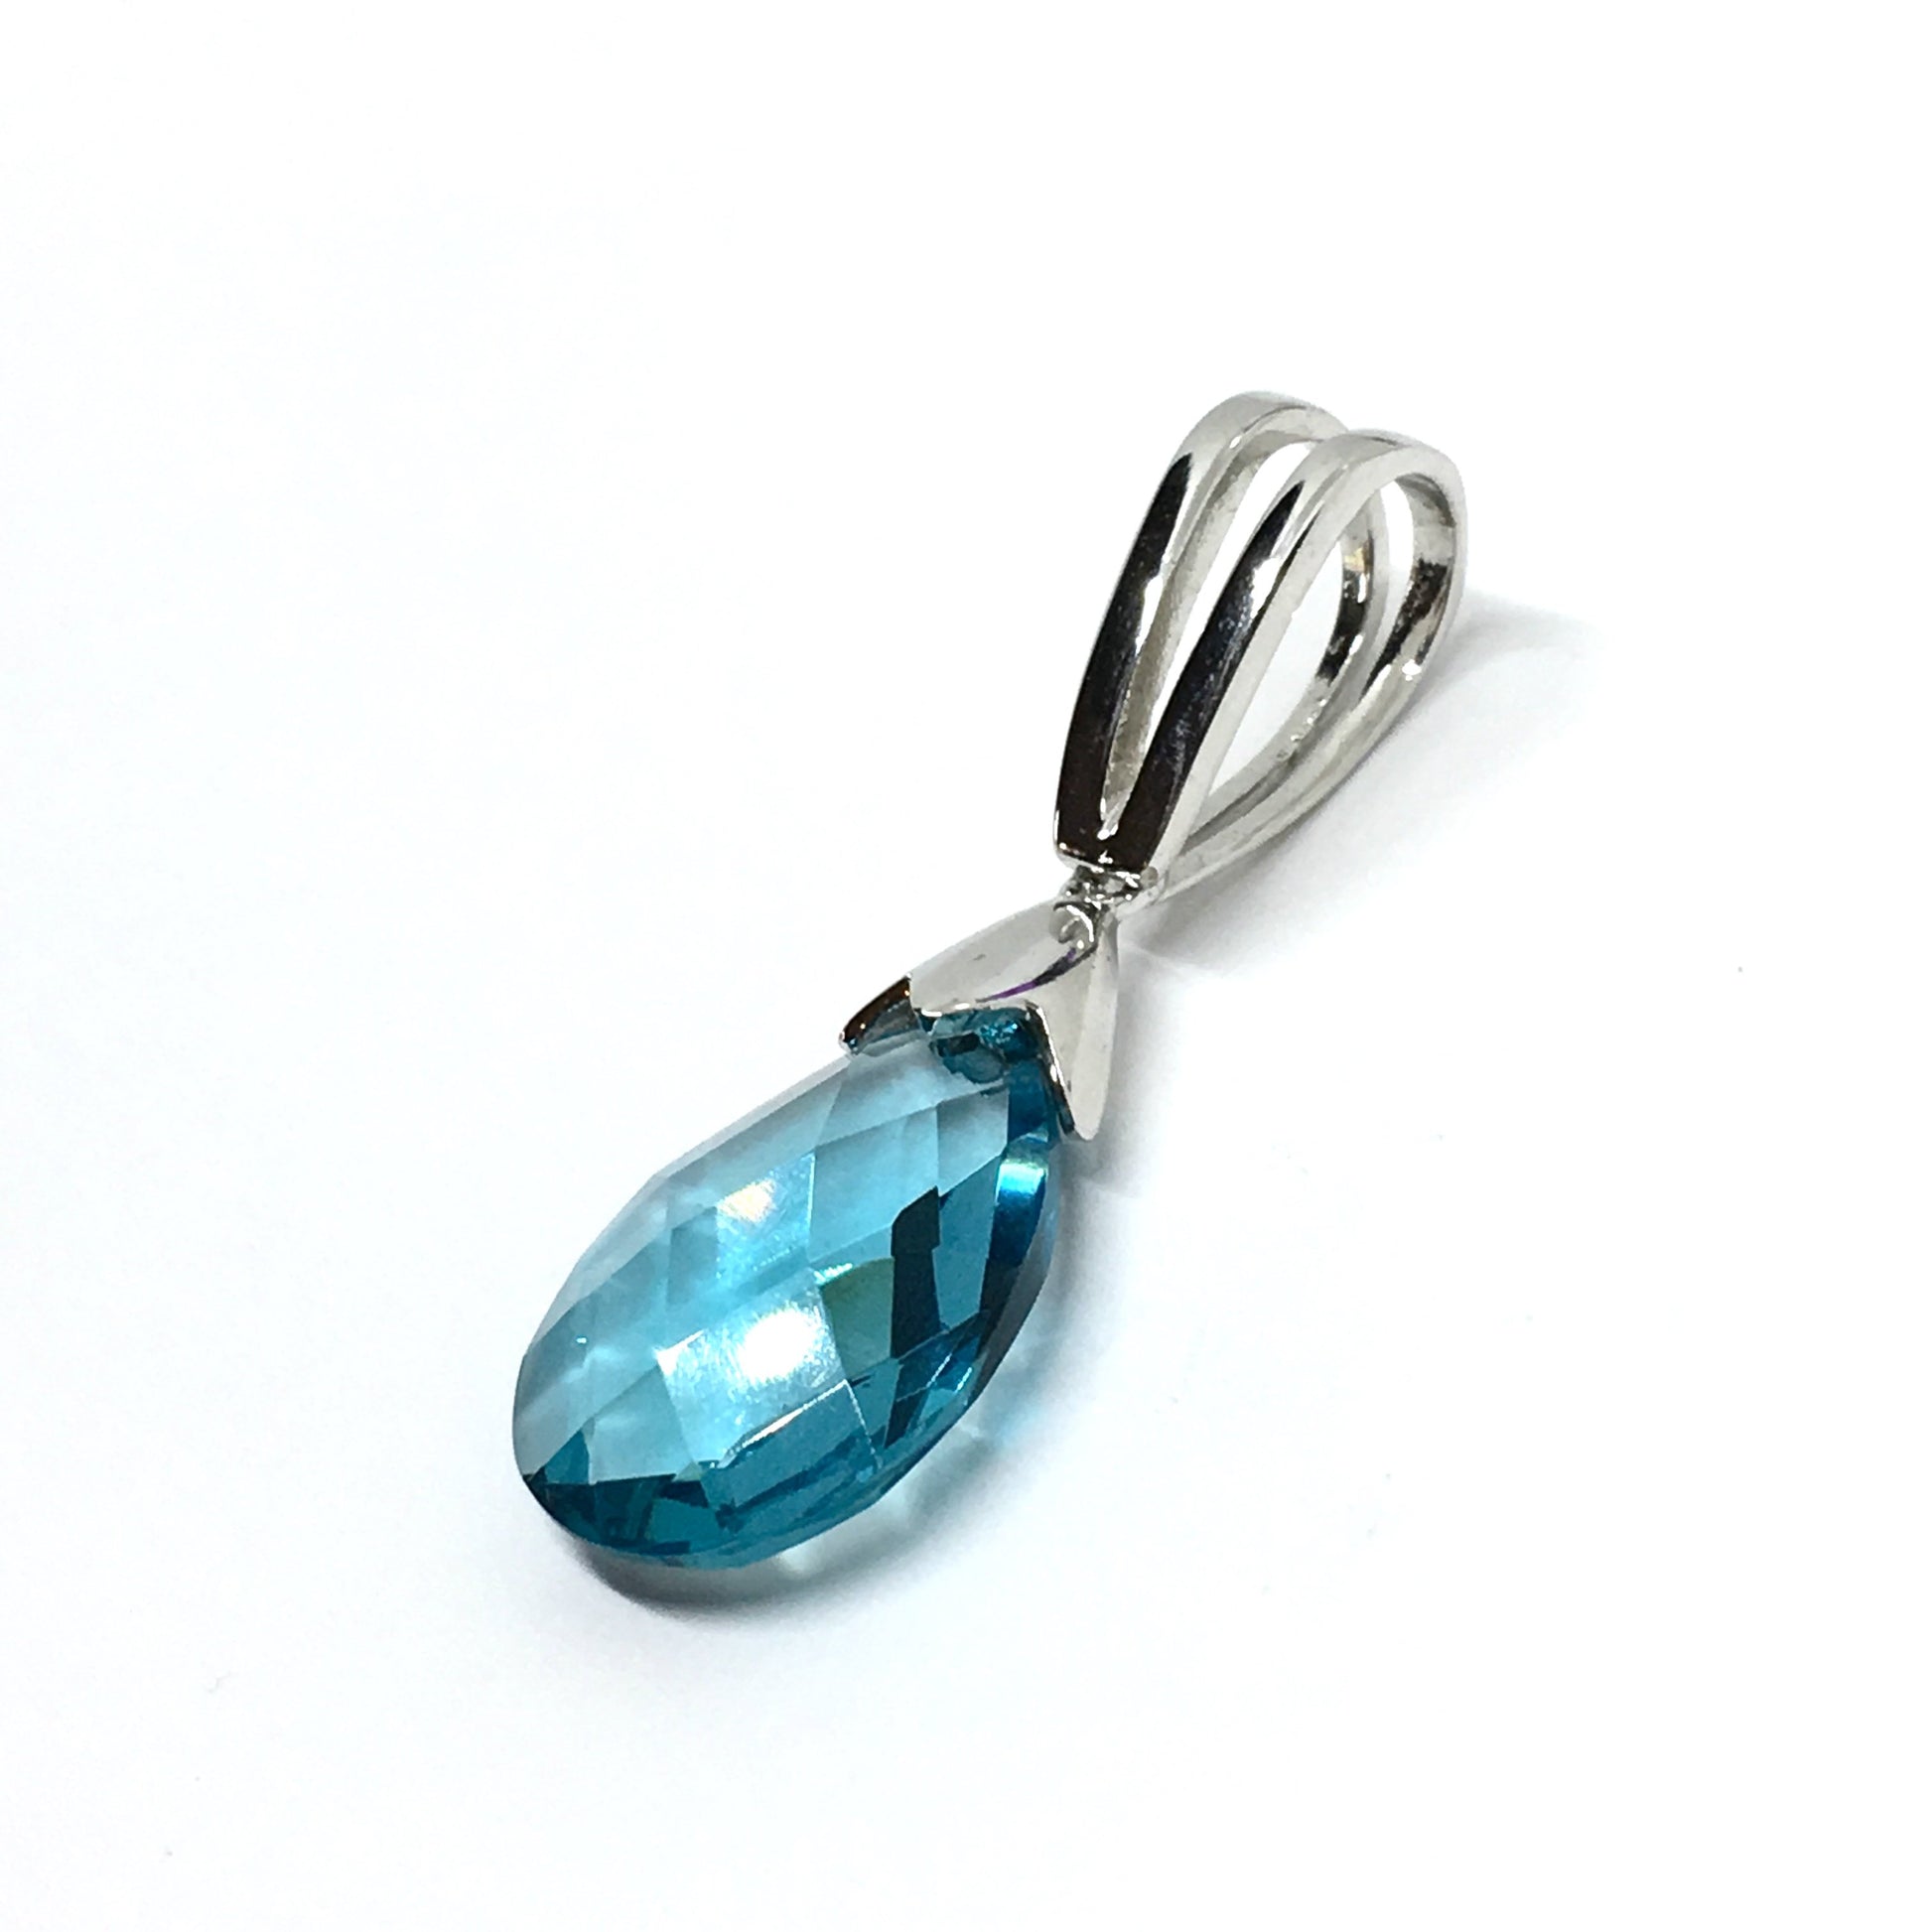 Pendant - Sleek Blue Teardrop Style Sterling Silver Pendant - online at Blingschlingers Jewelry USA